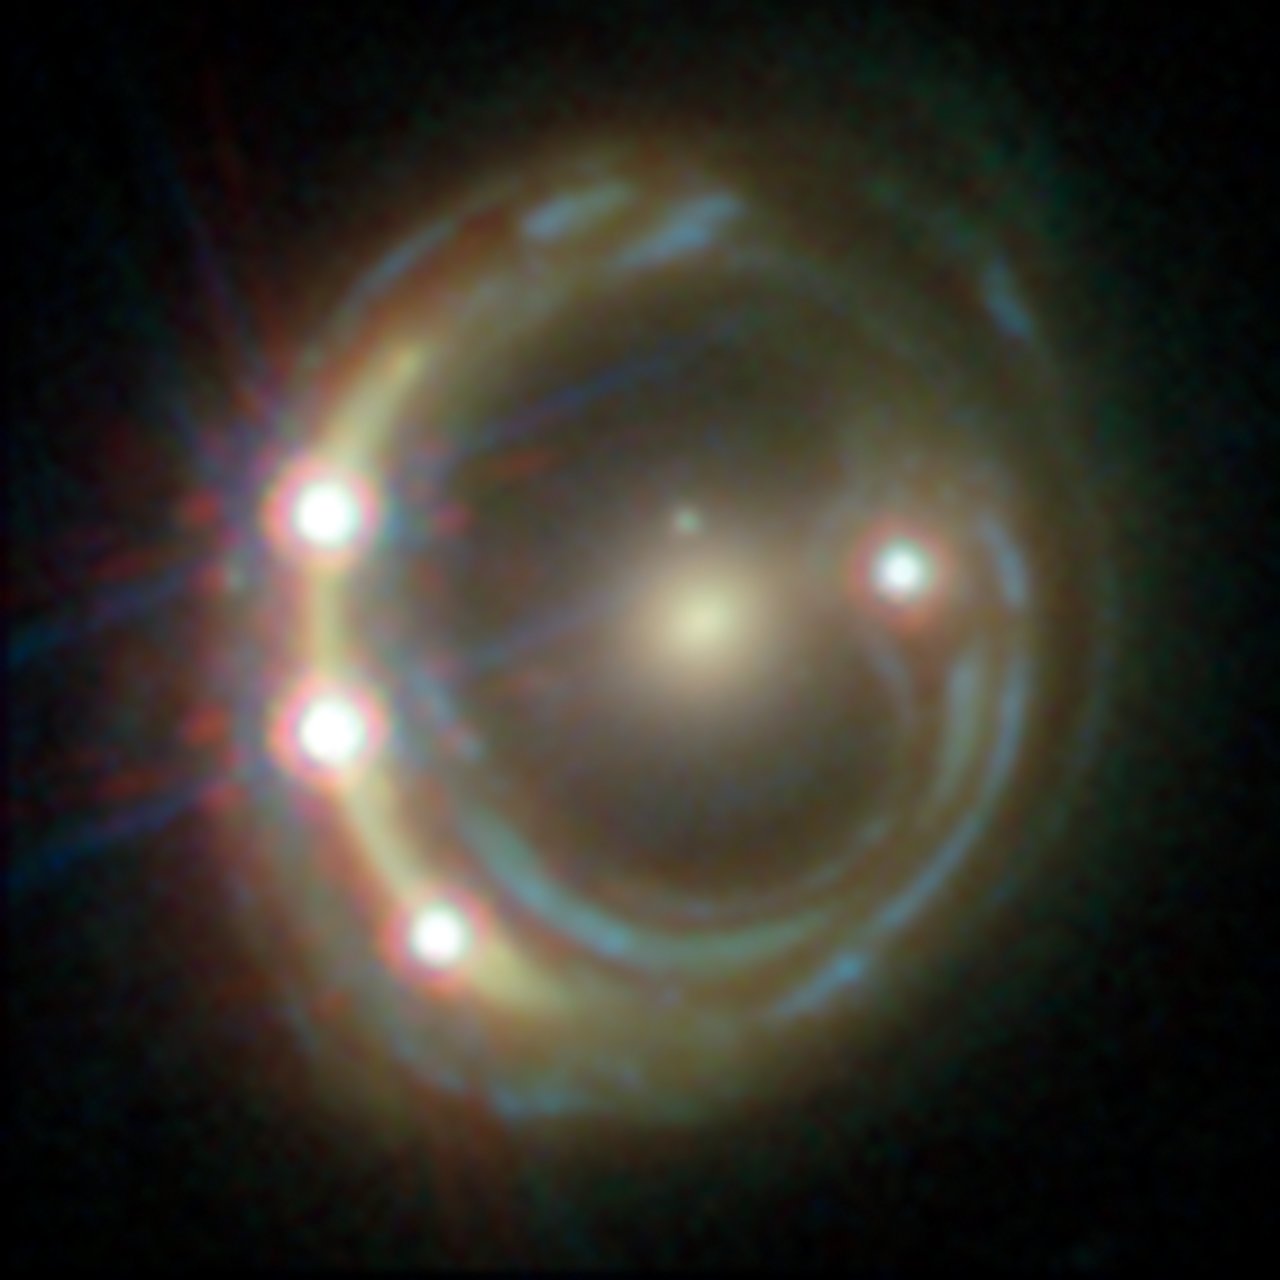 Lensed quasar